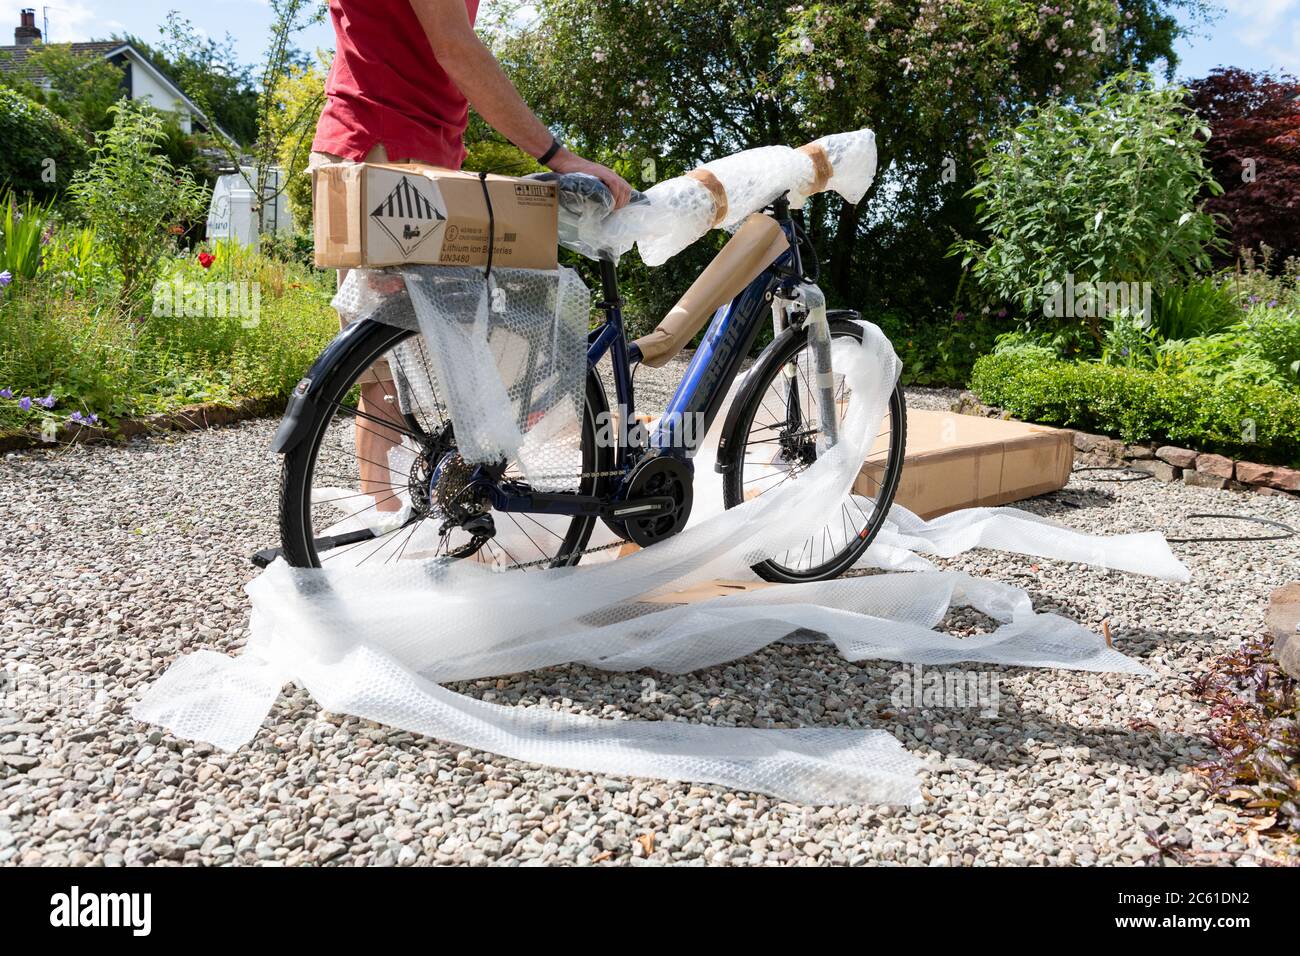 Home Lieferung von Elektro-Fahrrad eBike online bestellt während der Coronavirus Lockdown - Fahrrad aus Fahrradbox und Auspacken Luftpolsterfolie genommen - UK Stockfoto